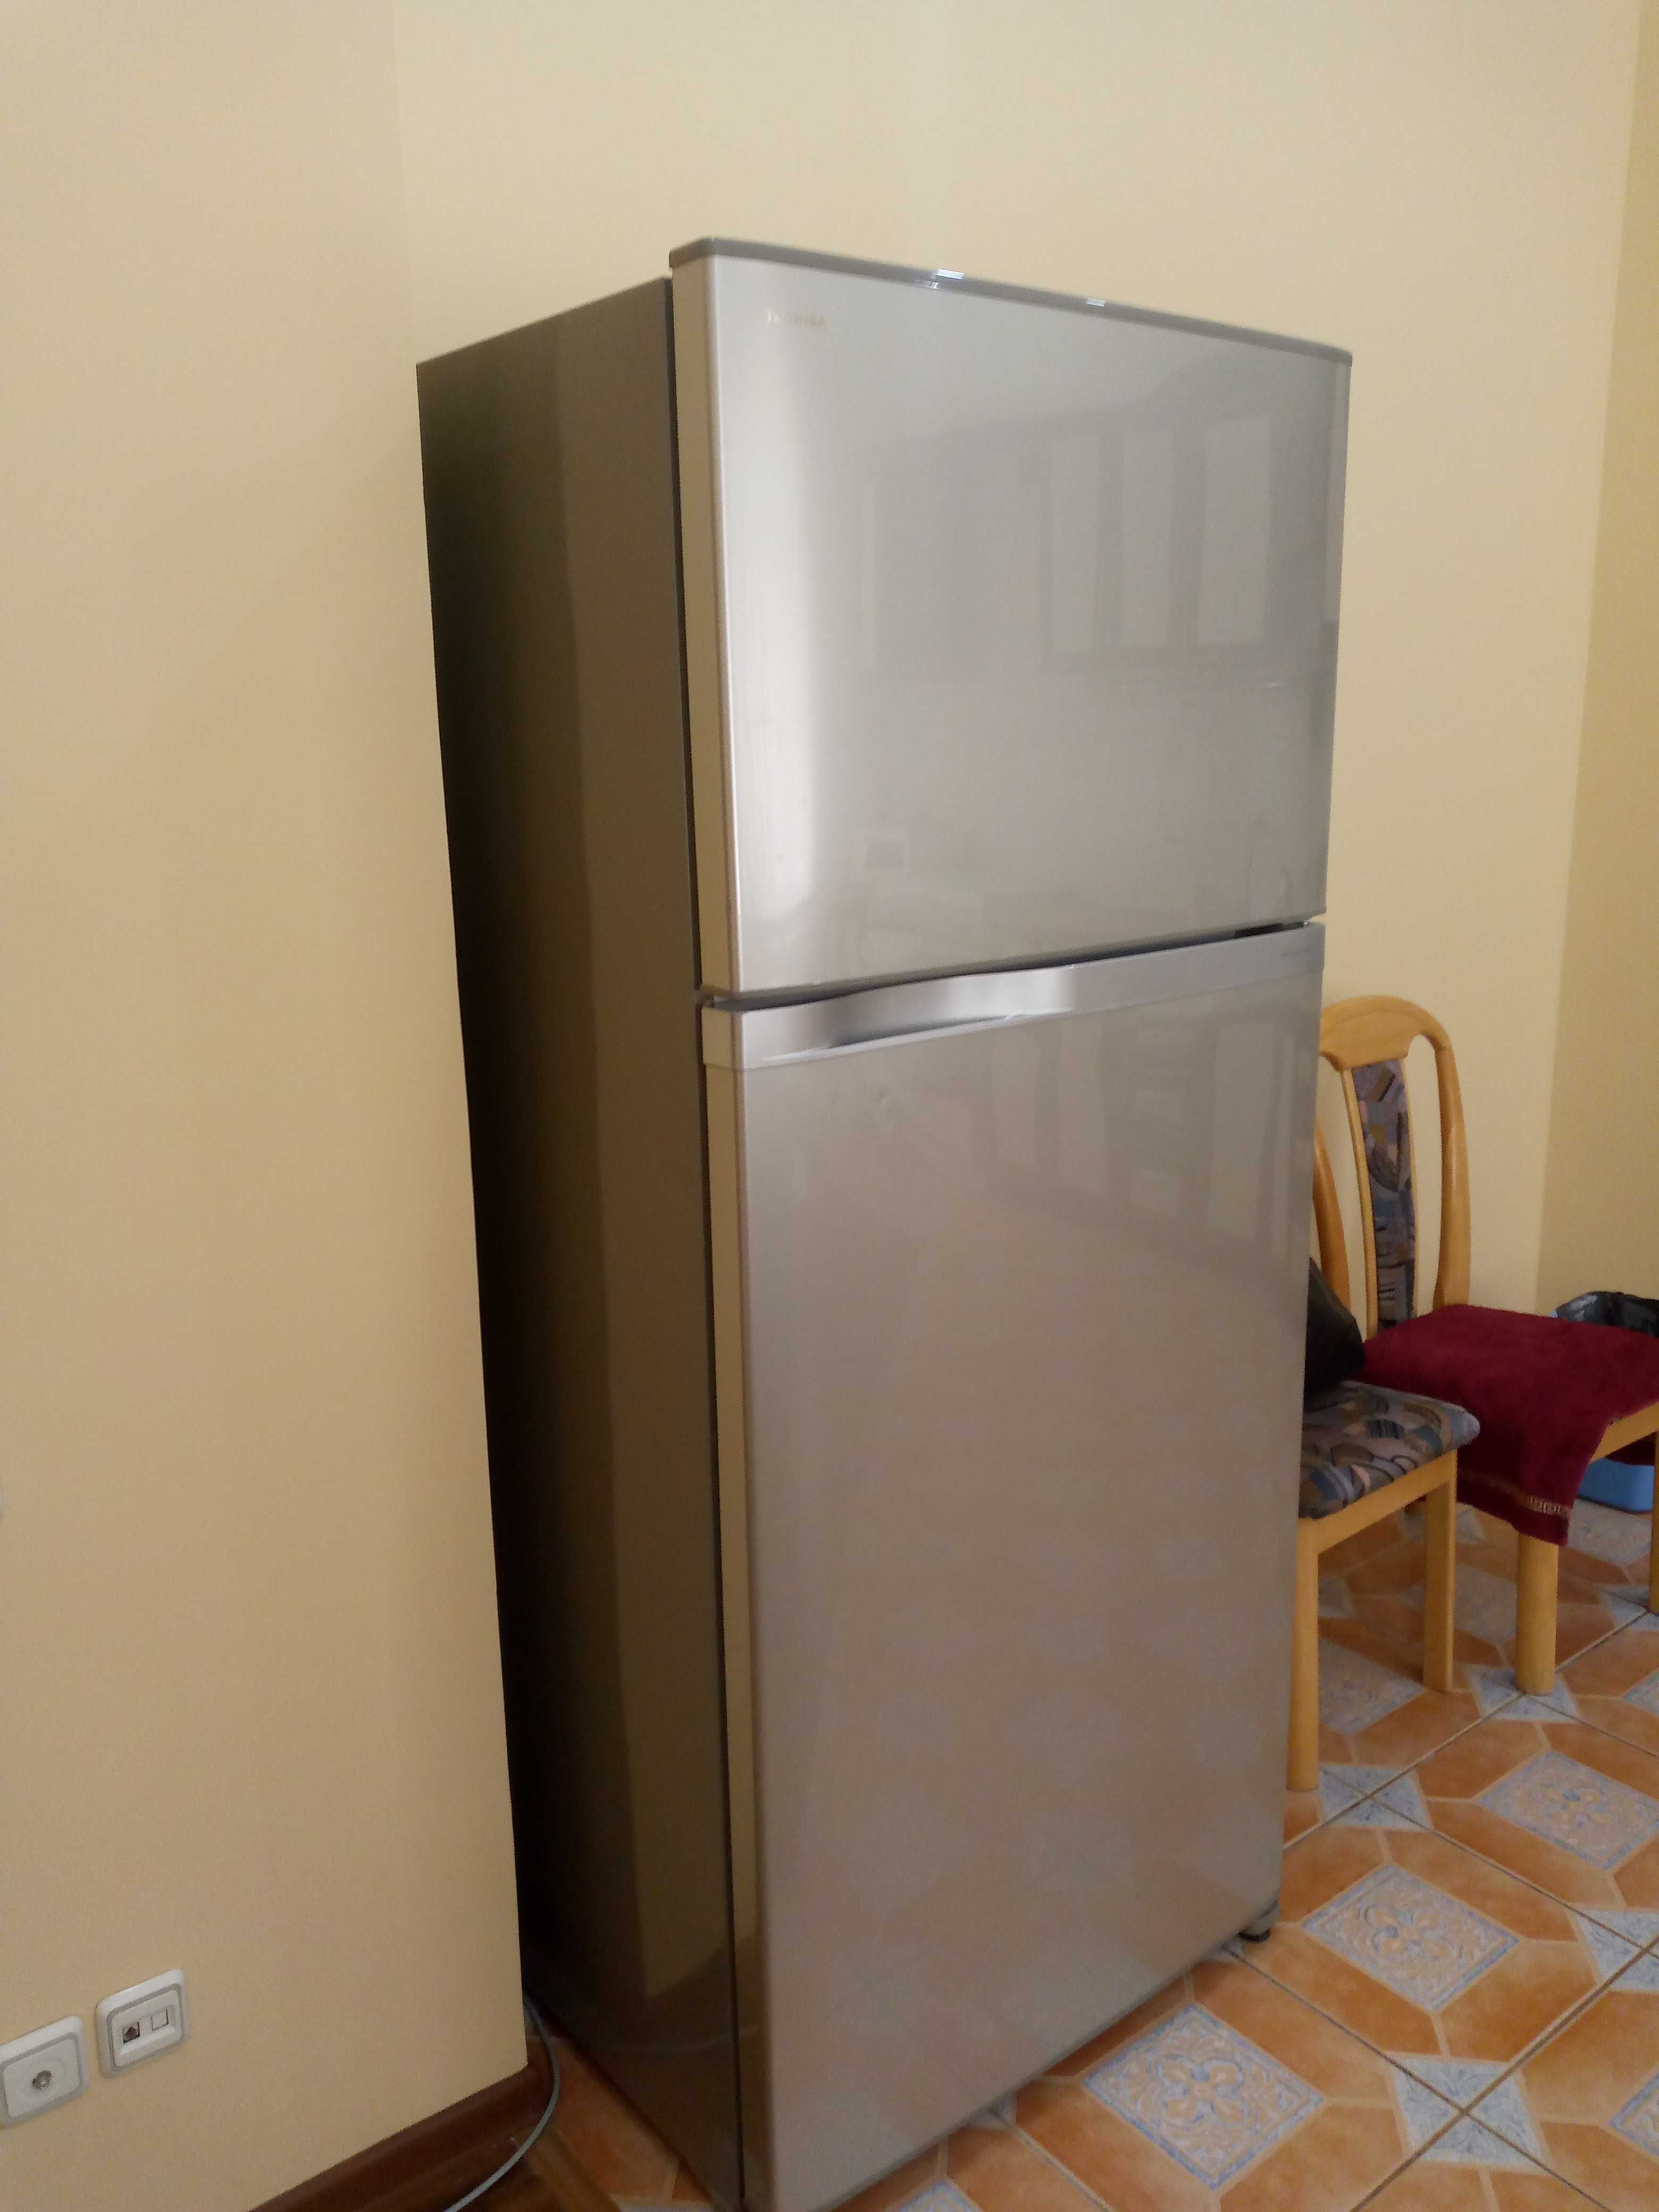 Холодильник TOSHIBA с большим объемом более 600л  в отличном состоянии